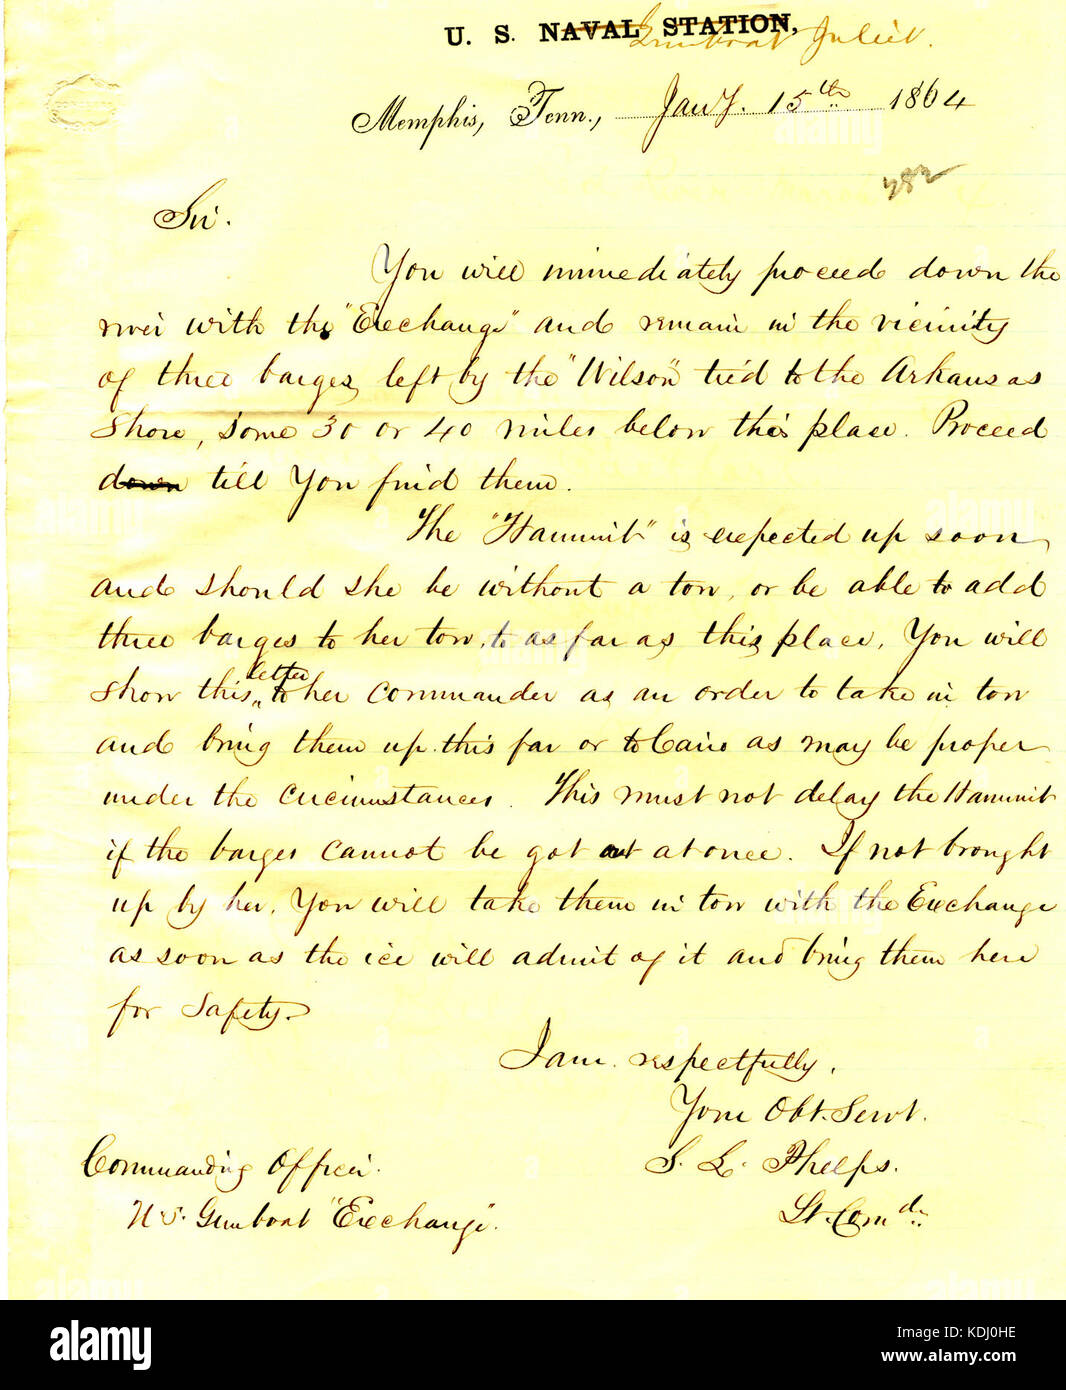 Lettre de Seth Ledyard Phelps, U.S. Naval Station, Memphis, Tennessee, de commandant de l'U. de S. S. change, le 15 janvier, 1864 Banque D'Images